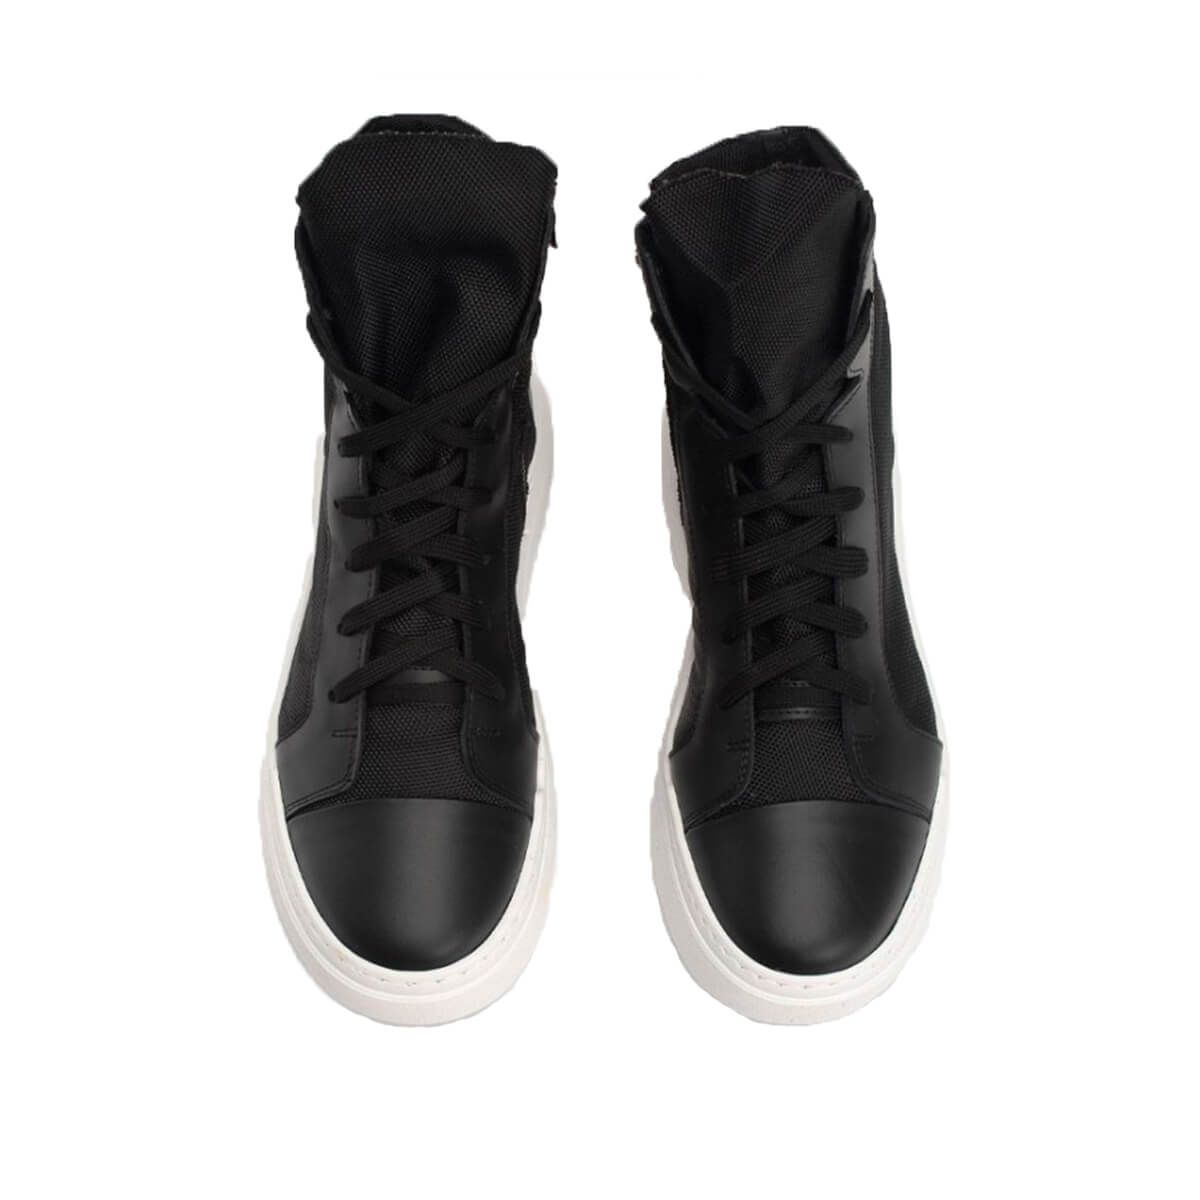 Black High Heels Sneakers